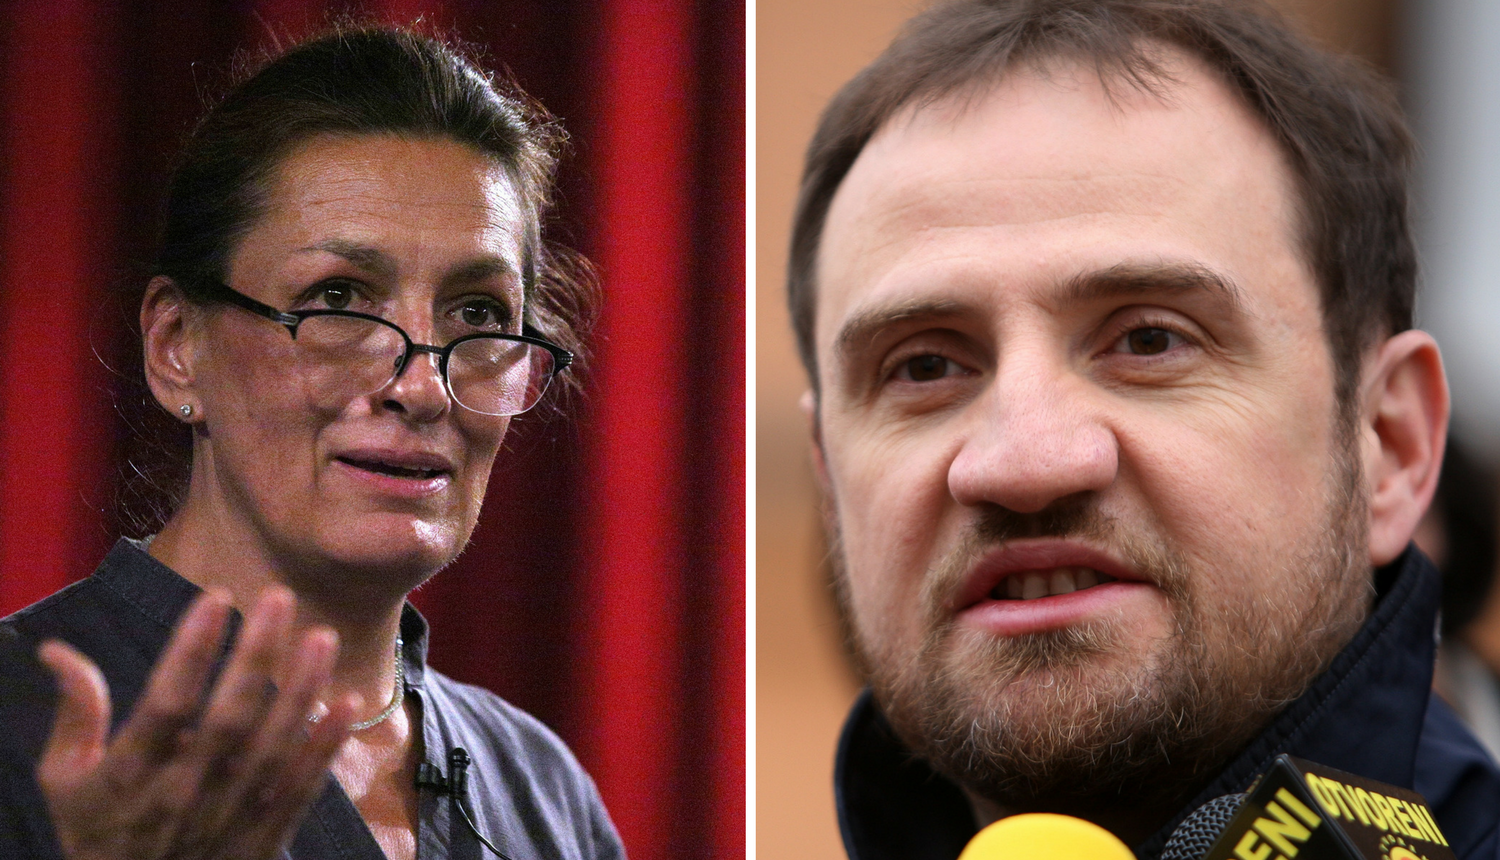 'Bandić je glumac i populist koji brani samo interesne skupine'